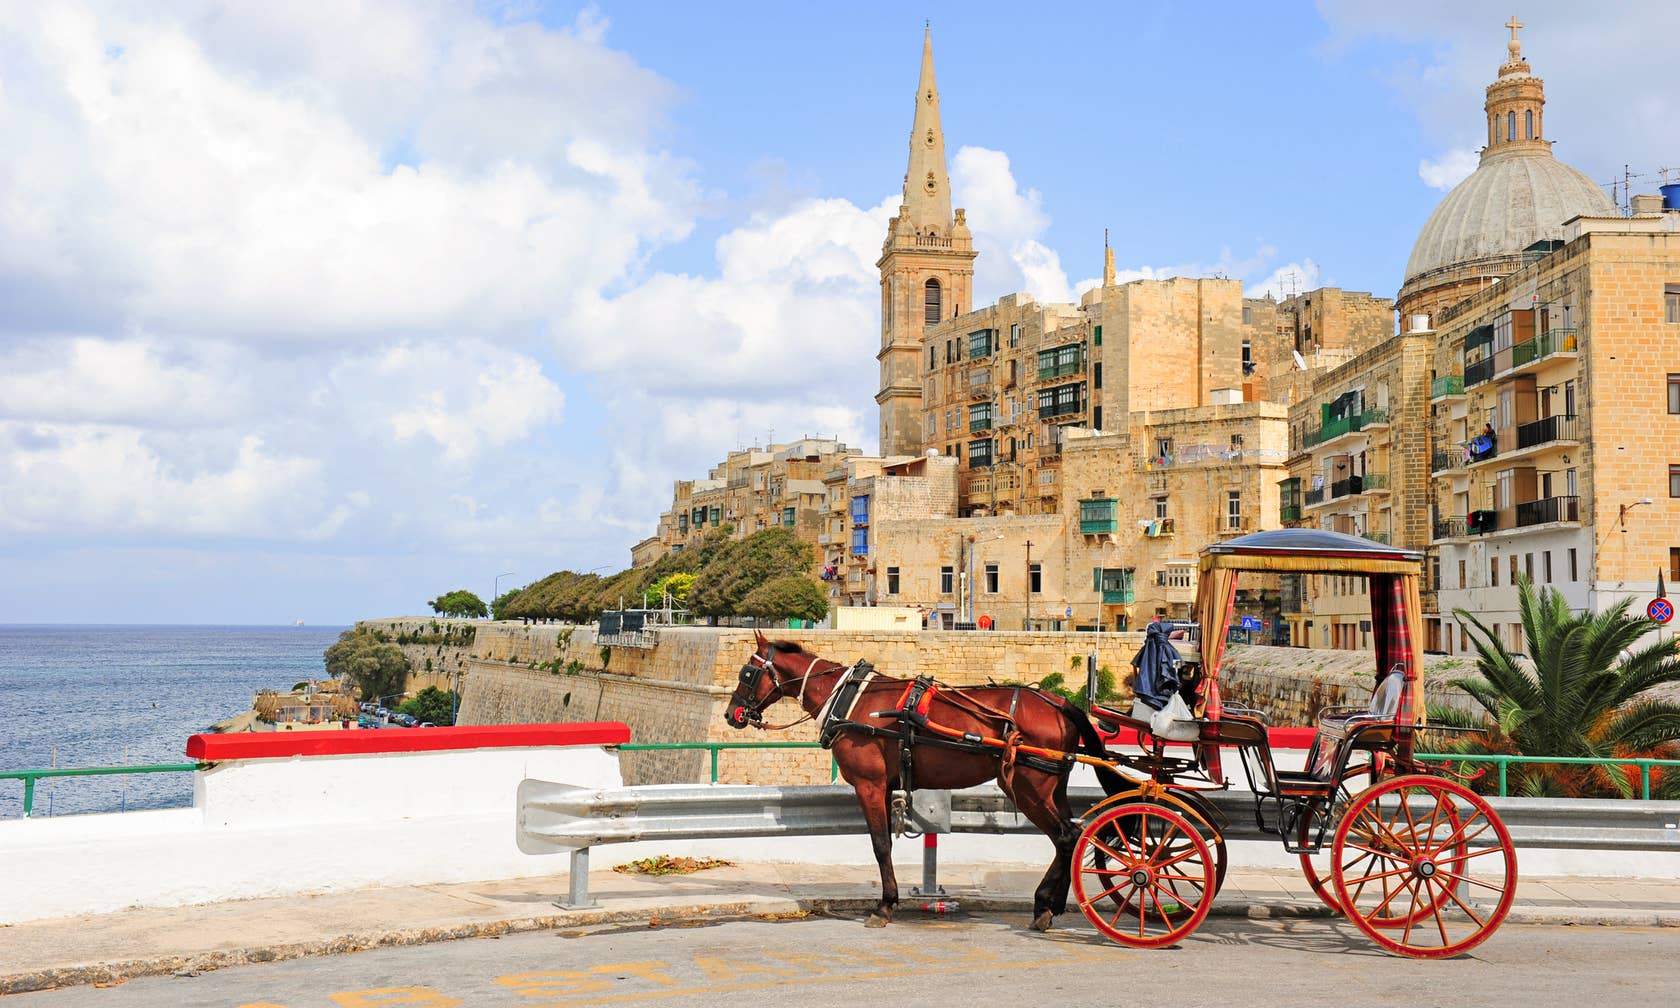 Bérbeadó nyaralók itt: Málta